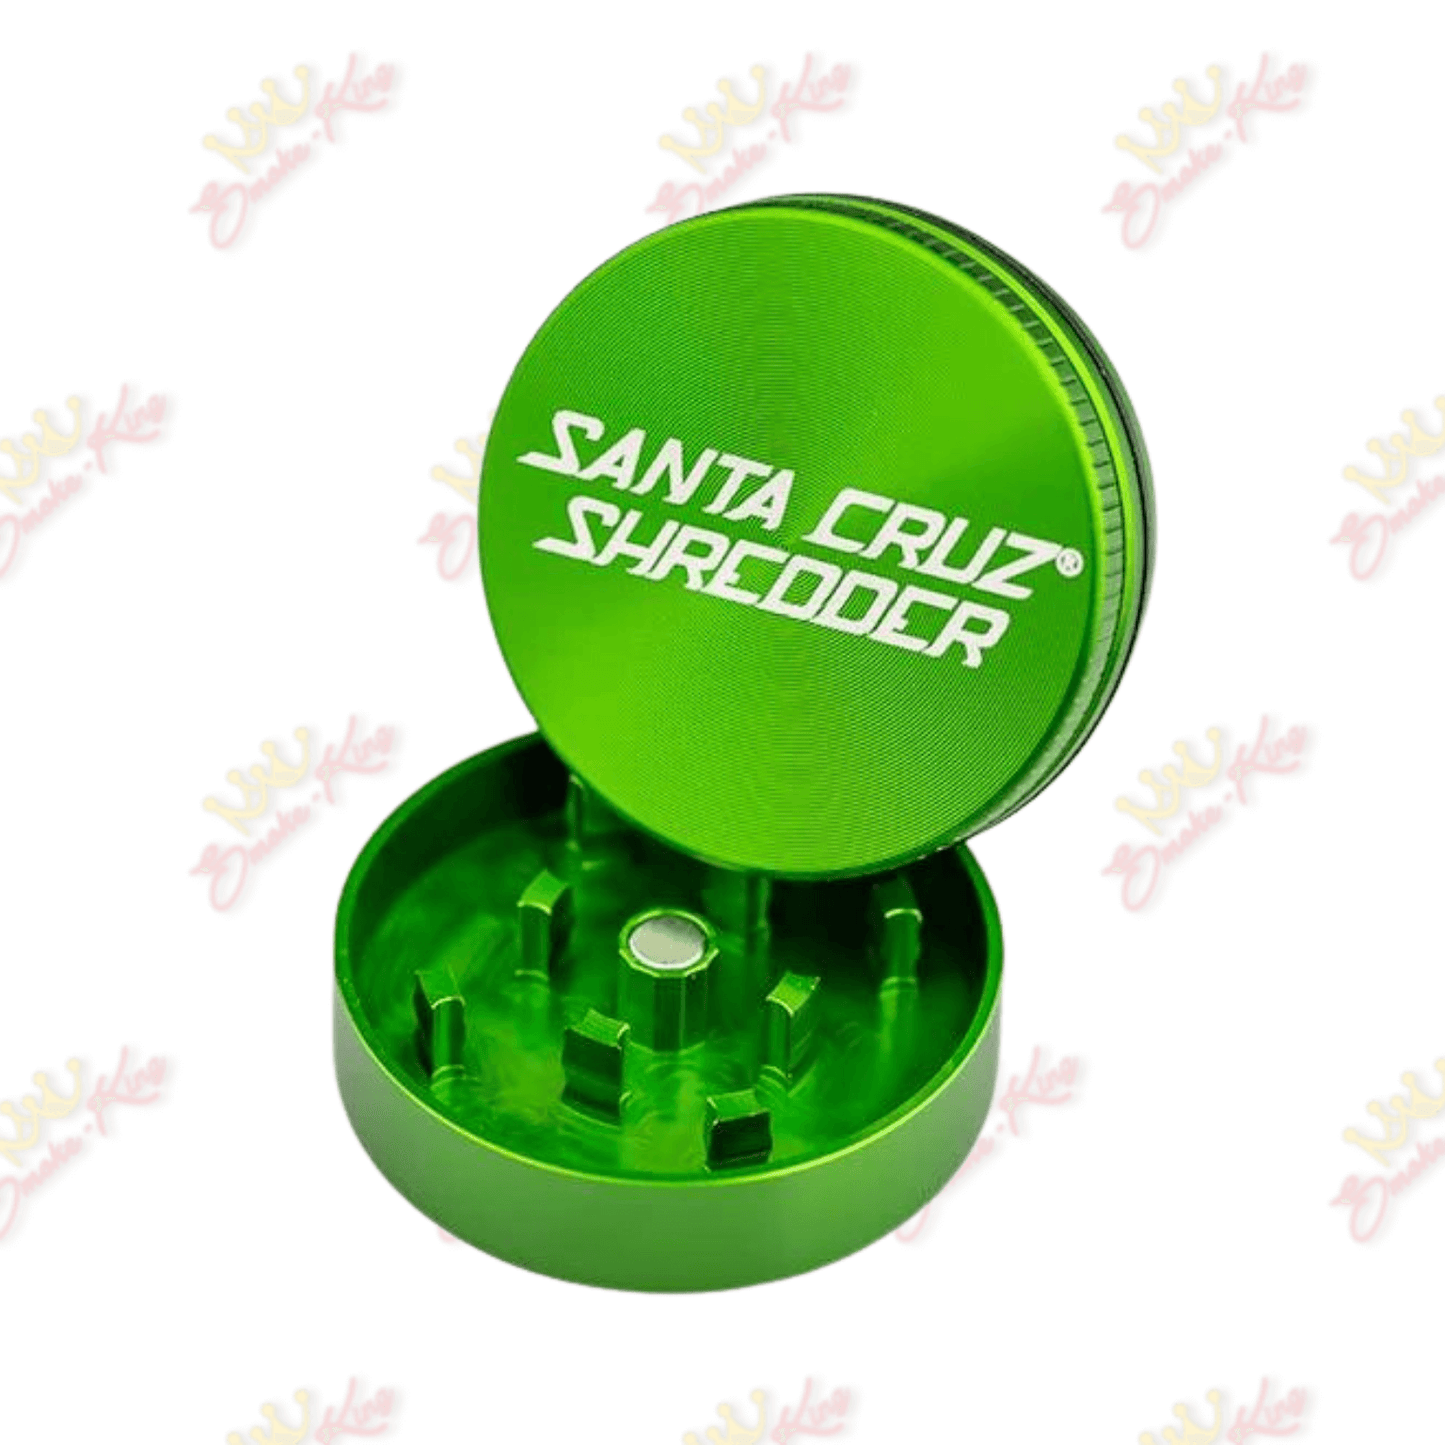 Santa Cruz Santa Cruz Shredder Santa Cruz Shredder | Grinders | Smoke-King